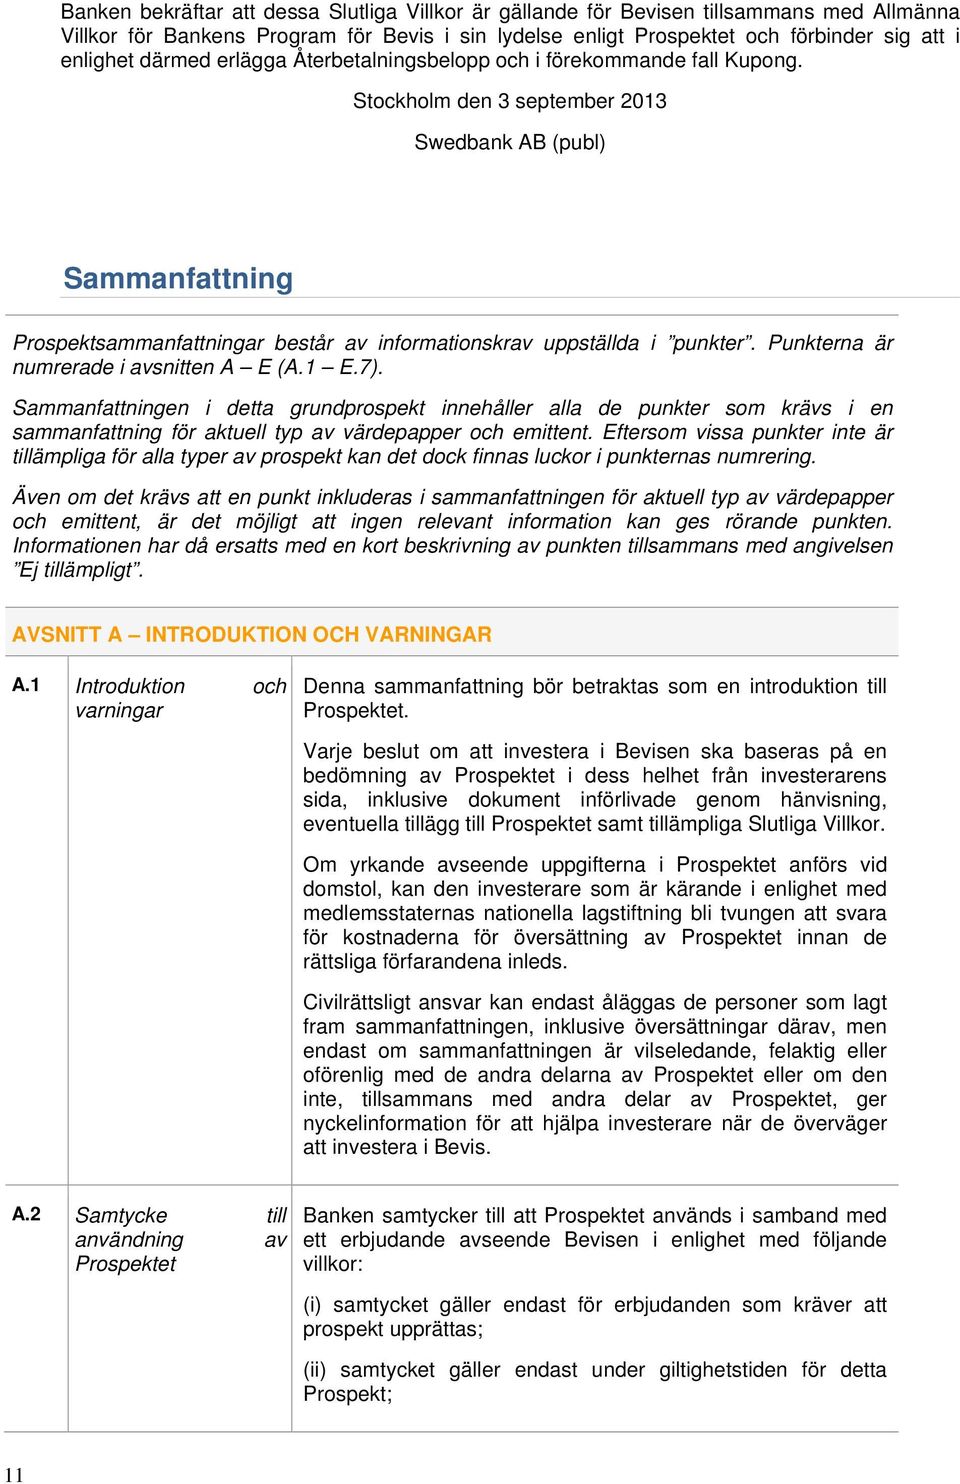 Stockholm den 3 september 2013 Swedbank AB (publ) Sammanfattning Prospektsammanfattningar består av informationskrav uppställda i punkter. Punkterna är numrerade i avsnitten A E (A.1 E.7).